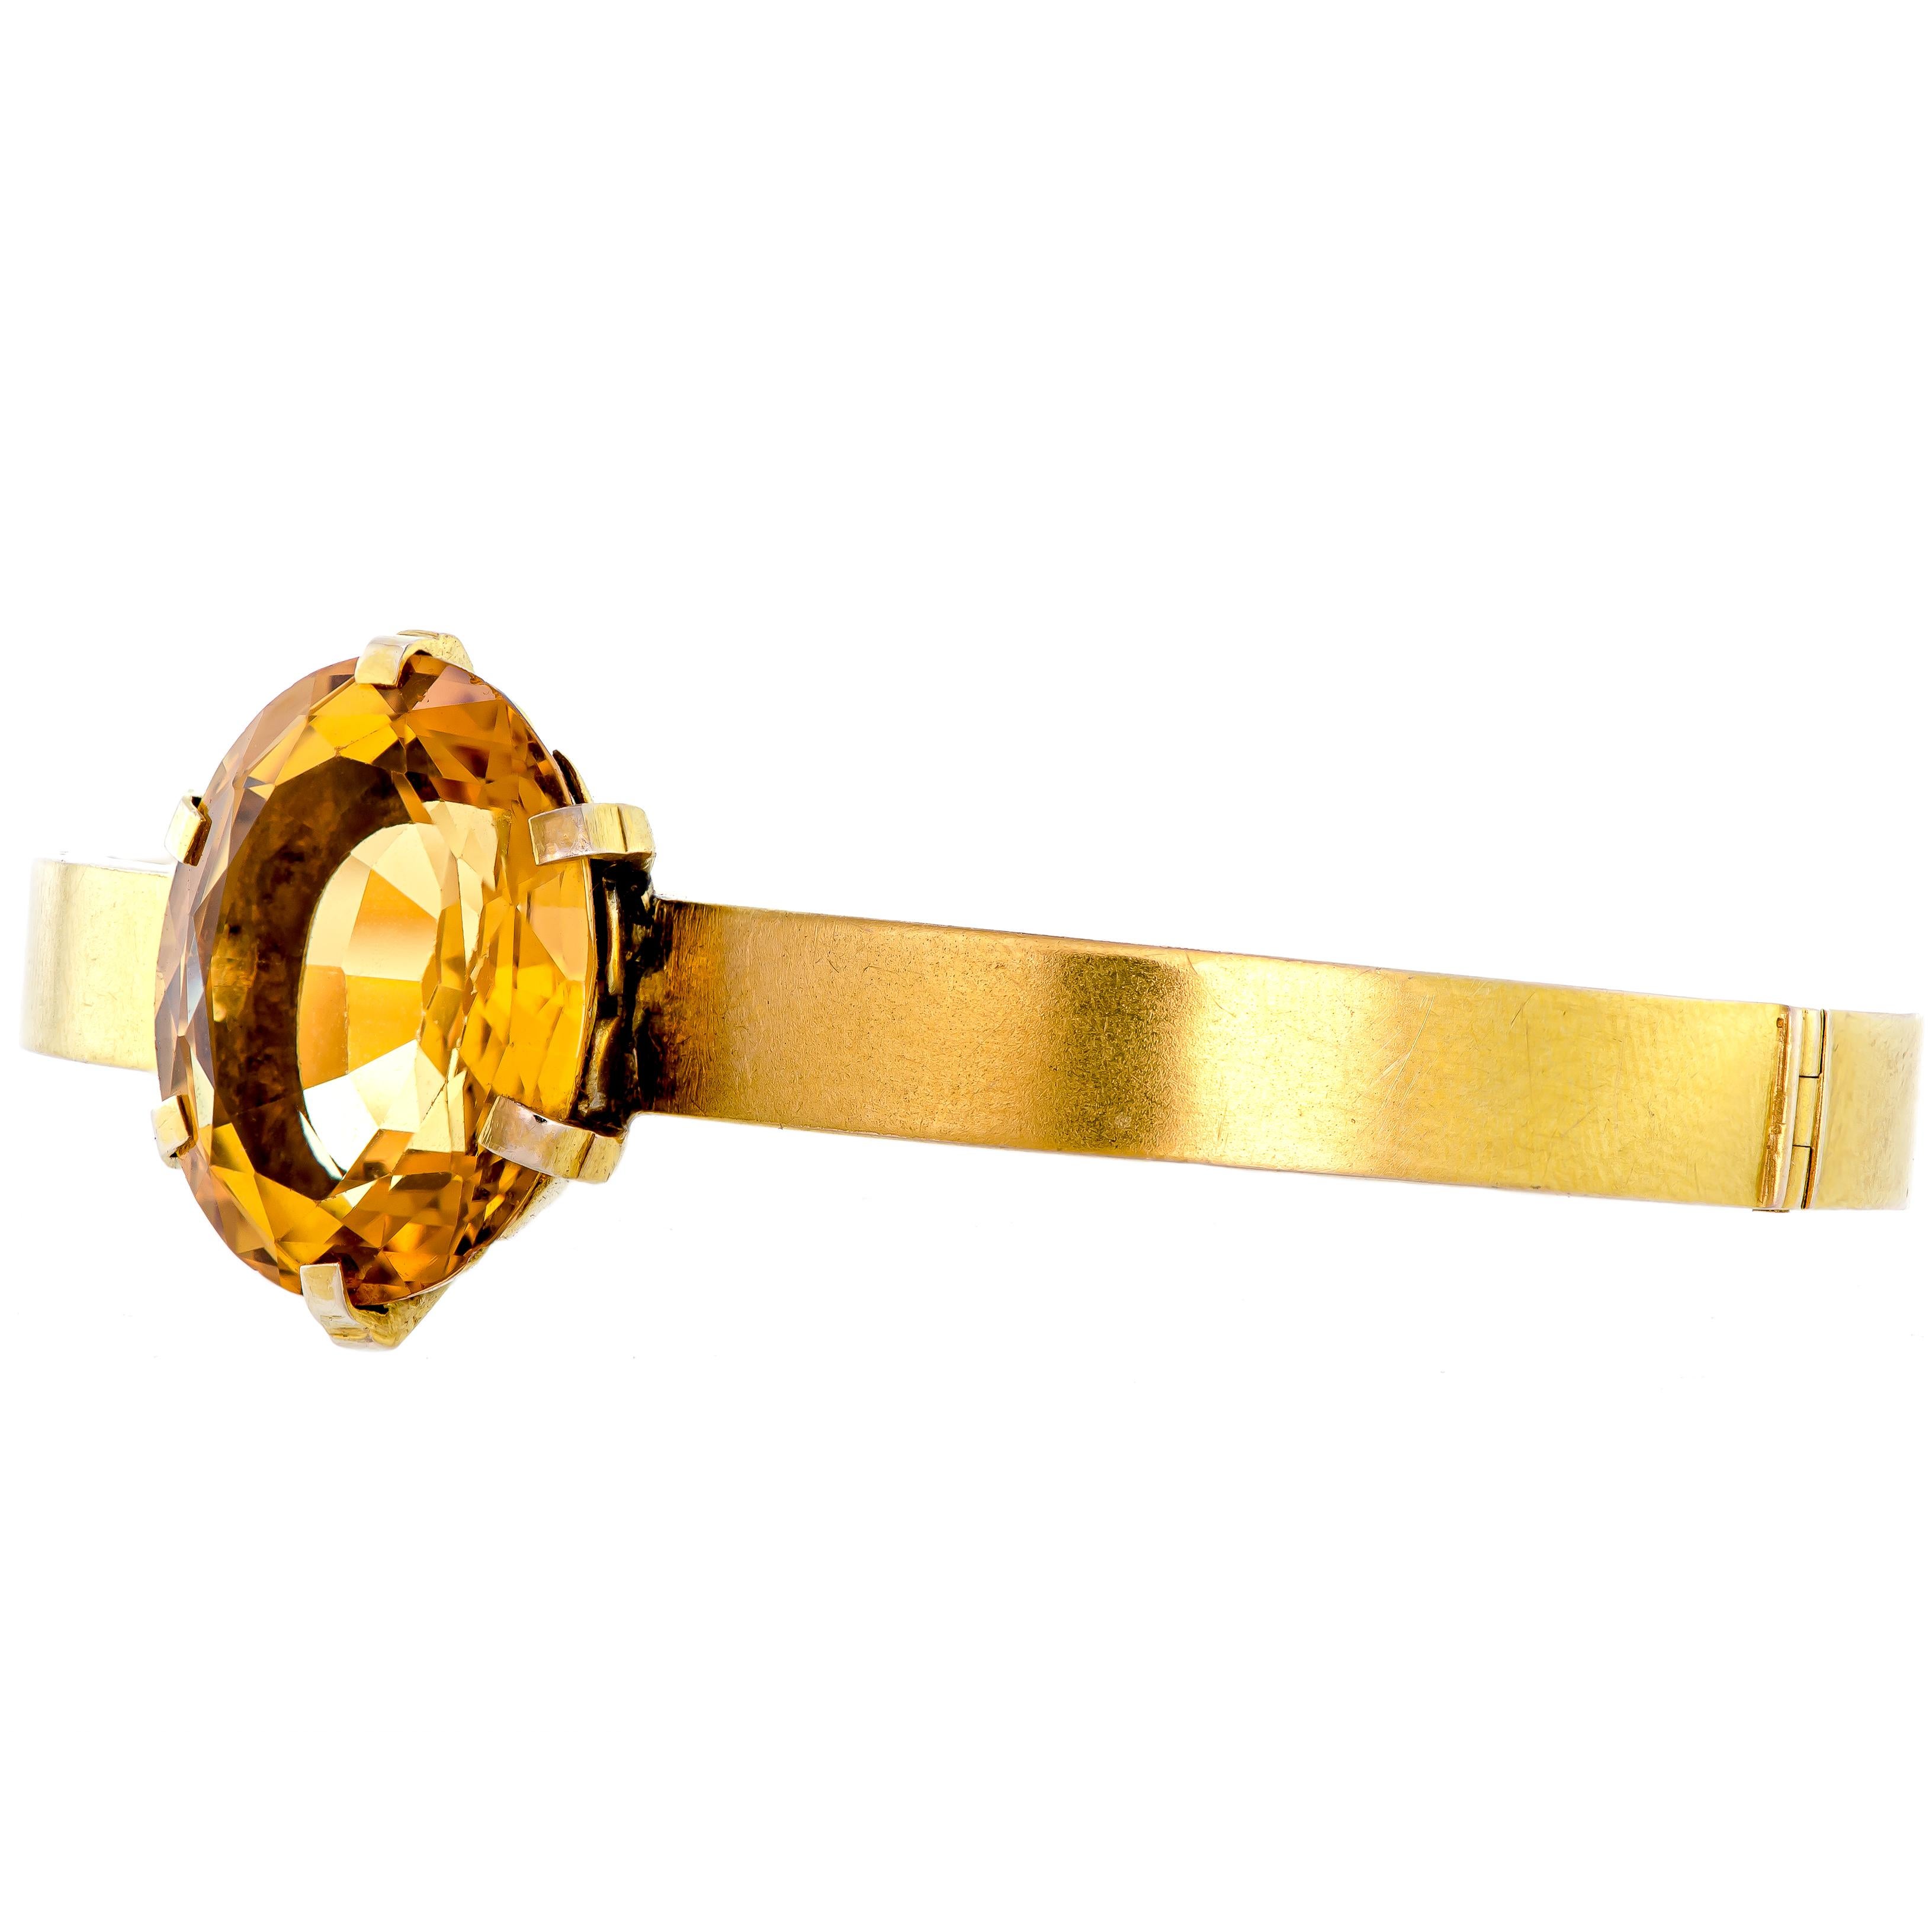 Ce remarquable bracelet de citrine ovale facettée de taille unique est une pièce maîtresse. Ce bracelet rigide est fabriqué en or jaune 14 carats. Il comporte une citrine de taille ovale facettée qui mesure 20,4 x 15,5 x 9,6 mm (environ) avec un